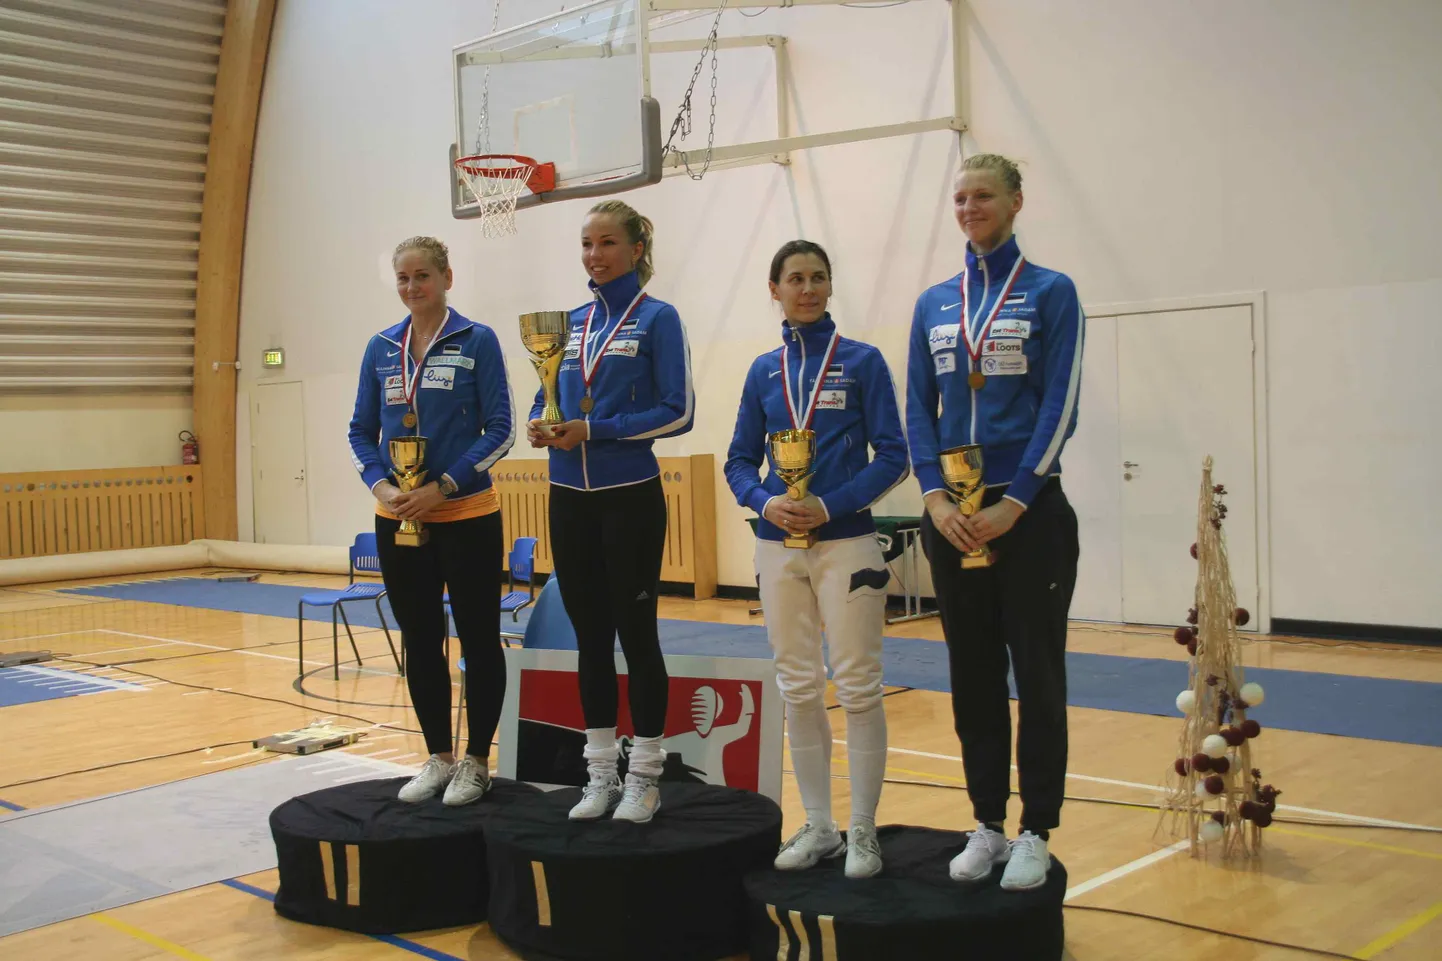 Tartu lahtise meistrivõistlused vehklemises. Pjedestaali esimesel positsioonil on Erika Kirpu, teisel Kristina Kuusk, pronksmedali võitsid Irina Embrich ja Katrina Lehis (paremal).